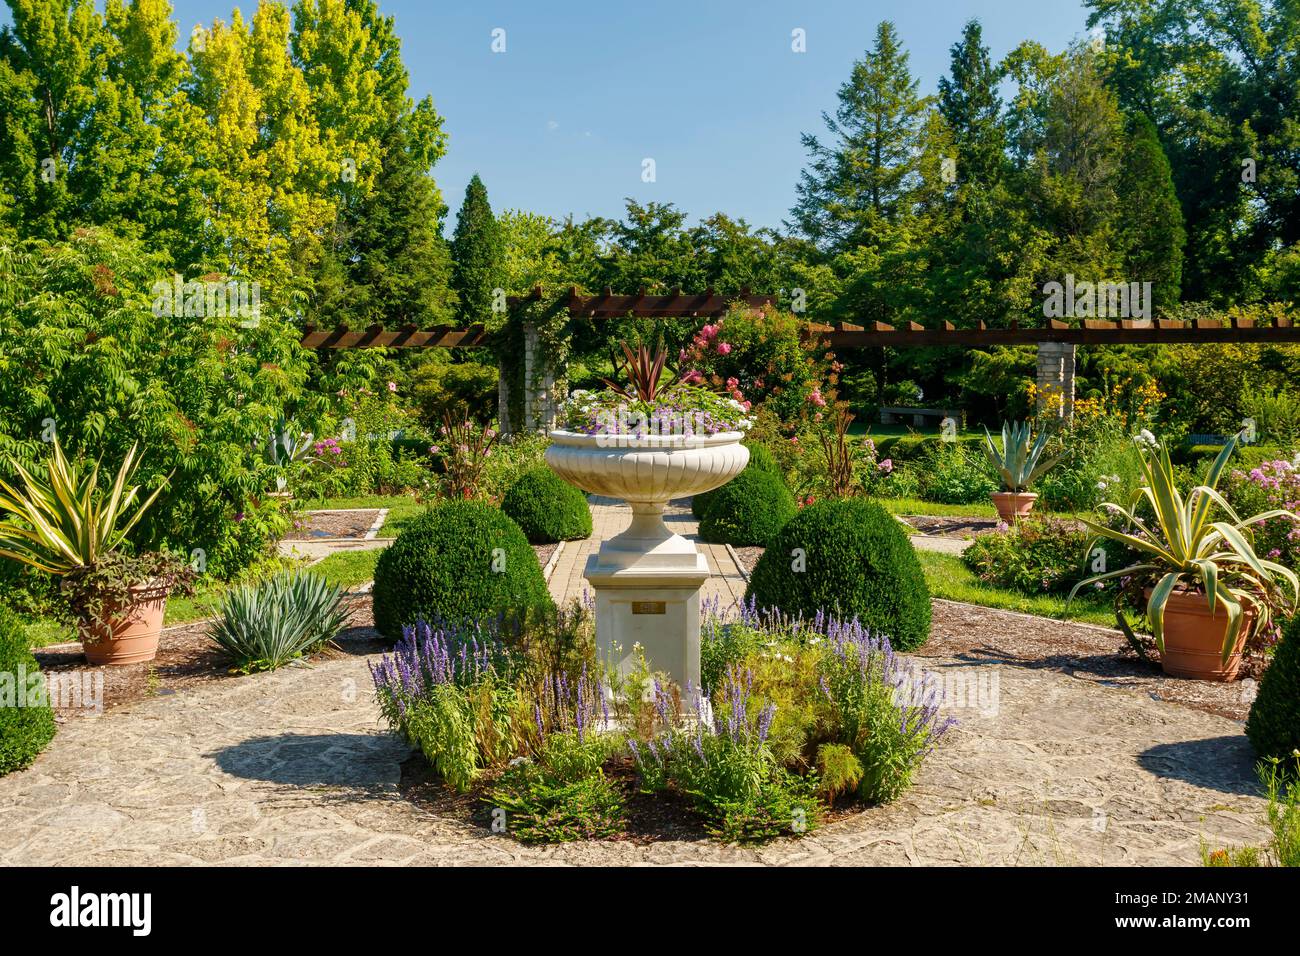 Jardin formel au Megerzen Gardens Metropark, Dayton, Ohio, États-Unis. Banque D'Images